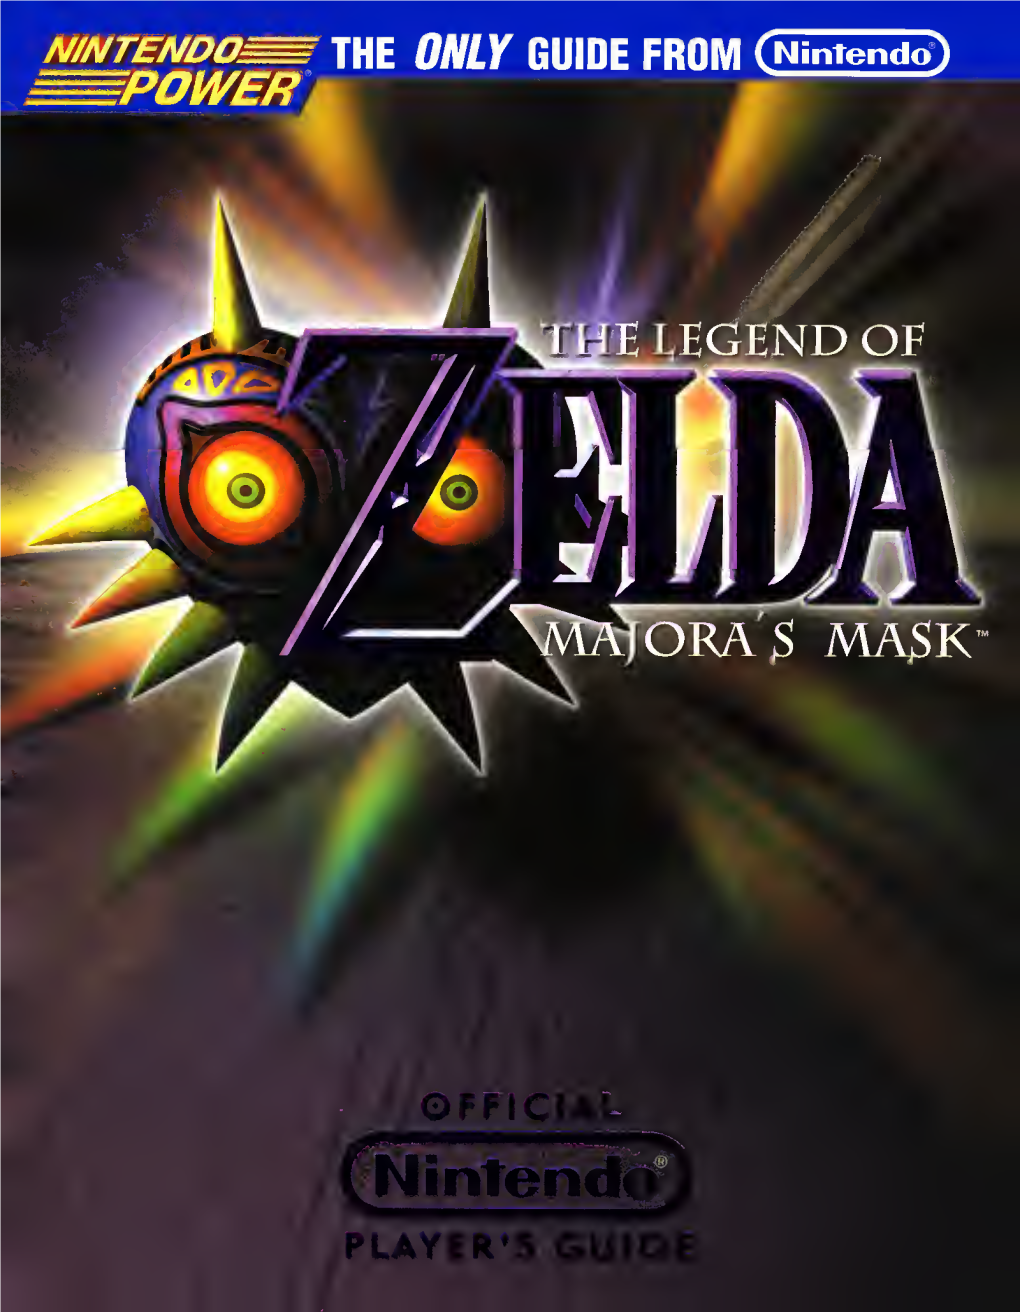 Nintendo Player's Guide (N64) Legend of Zelda, the Majora's Mask